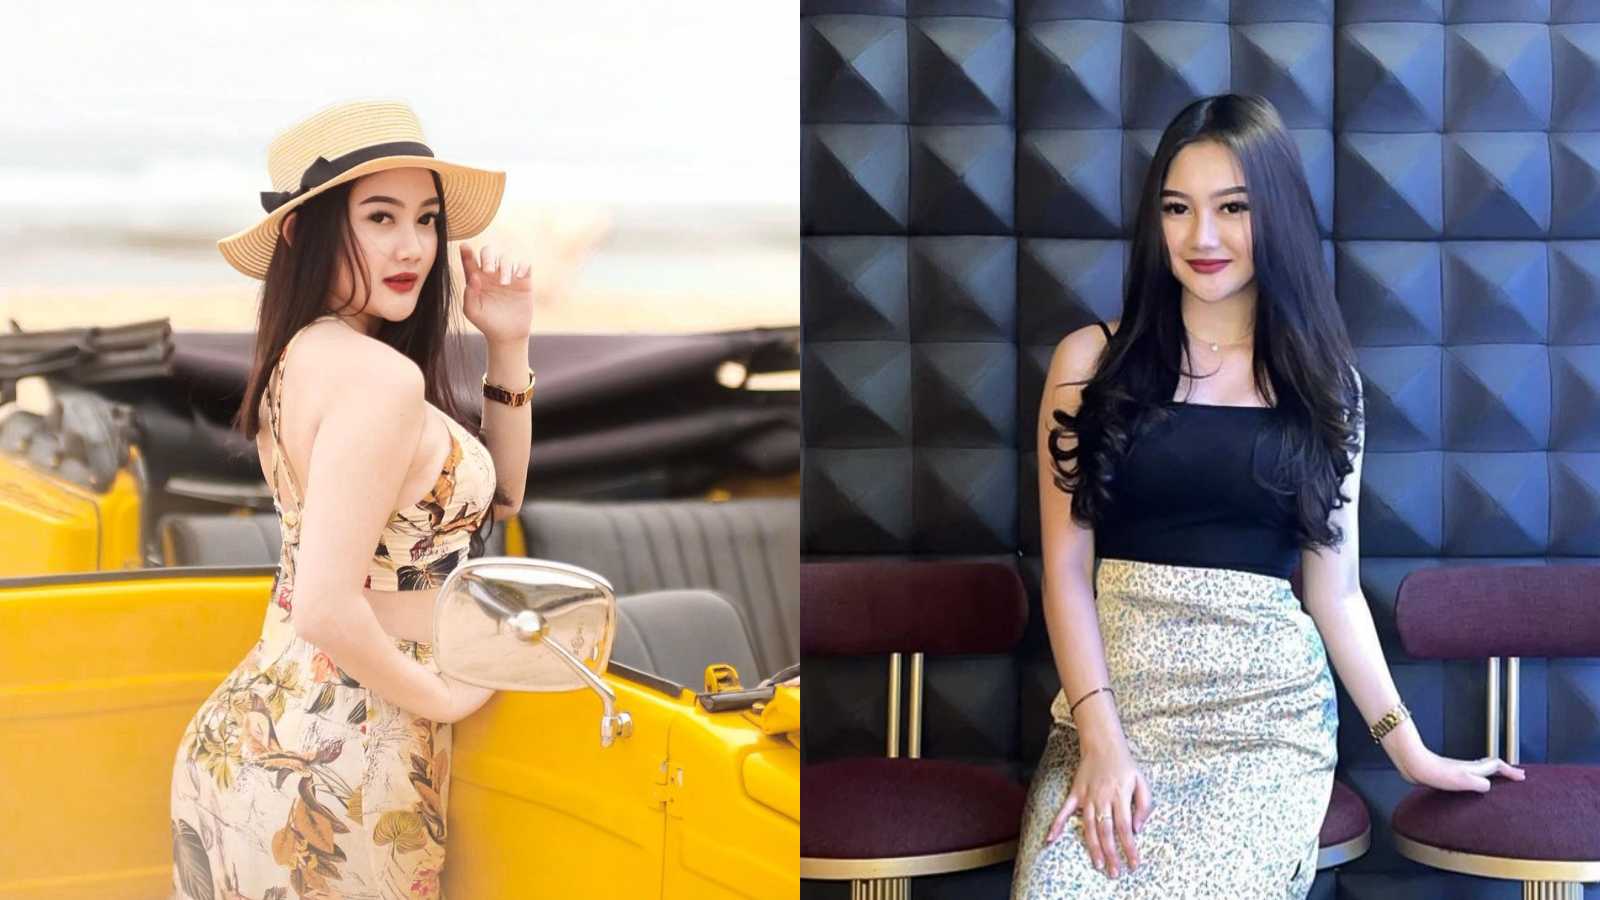 Fakta dan Profil Veni Nurdaisy, Selebgram Cantik yang Juga Penyanyi Dangdut Hits di Media Sosial